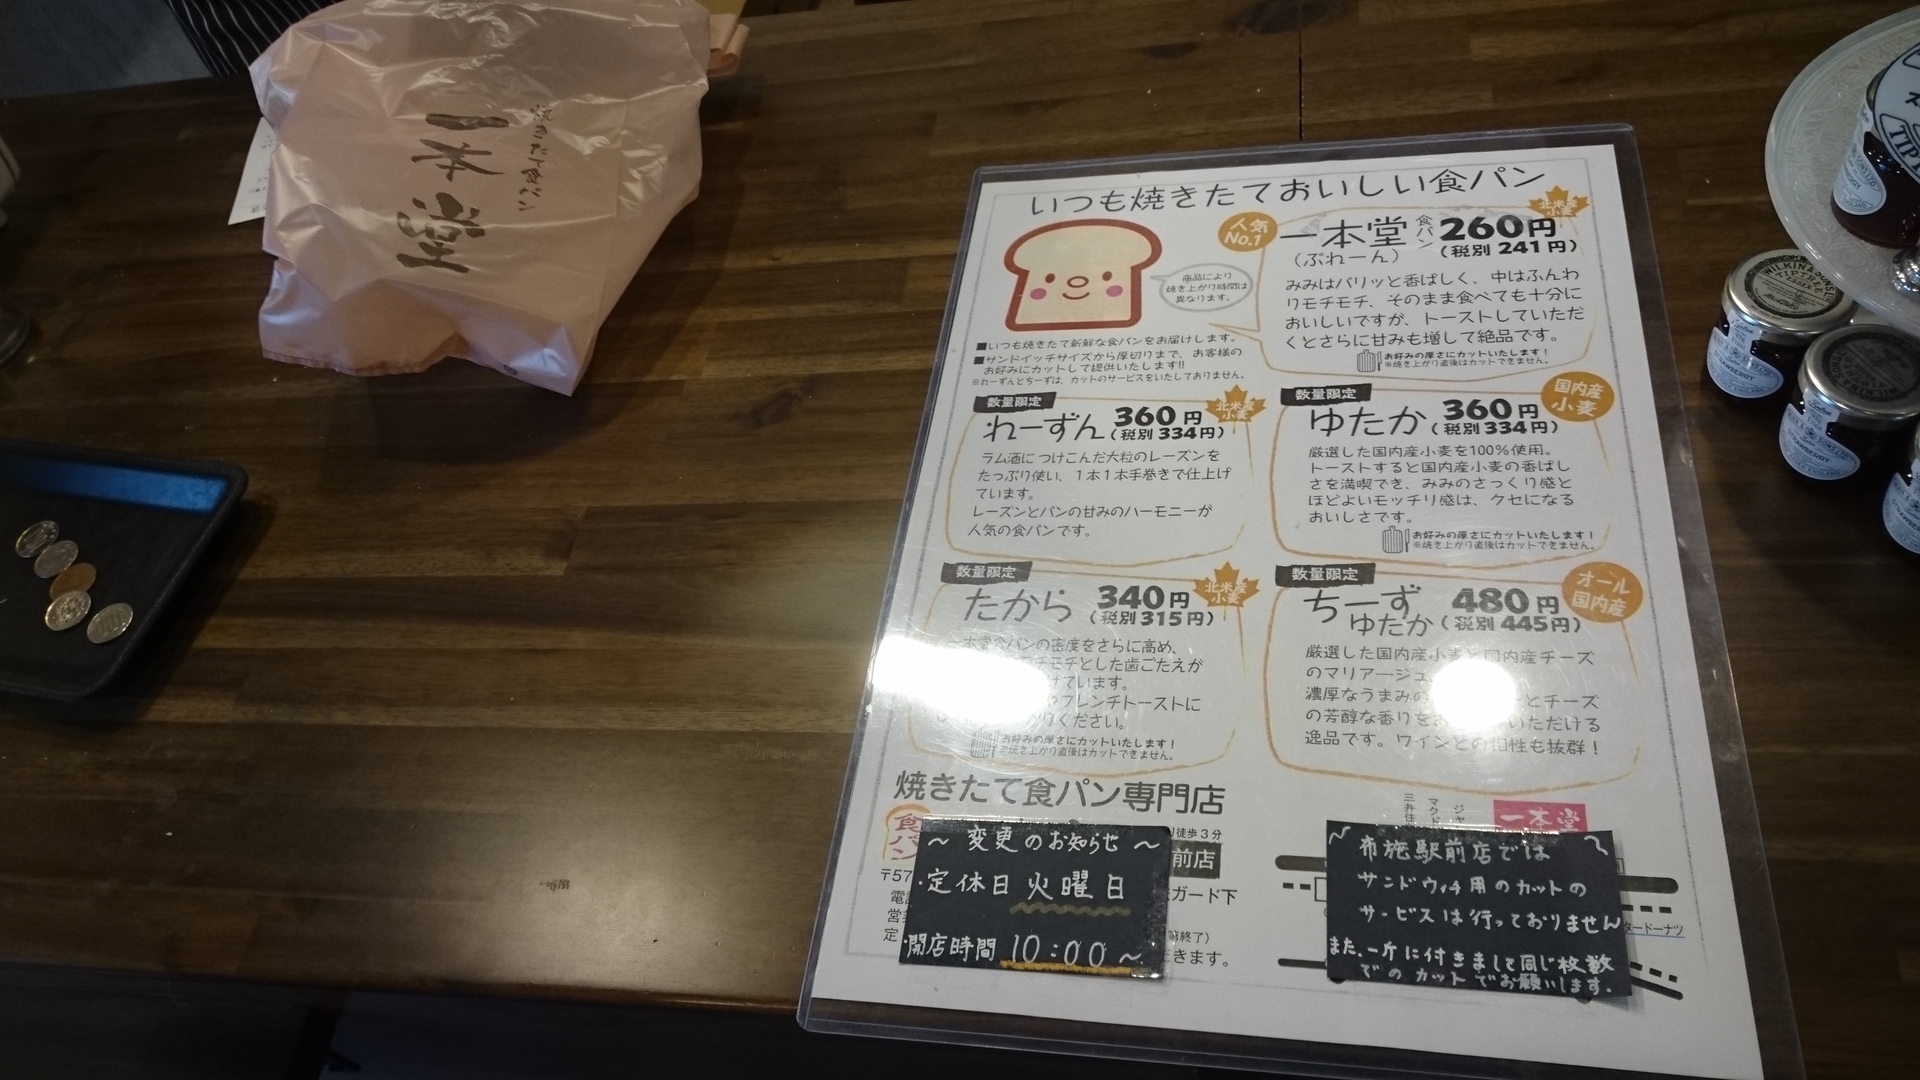 東大阪市にある一本堂の食パンにまつわる美味しさの魅力 Near Future 趣味 興味 気ままな日常blog